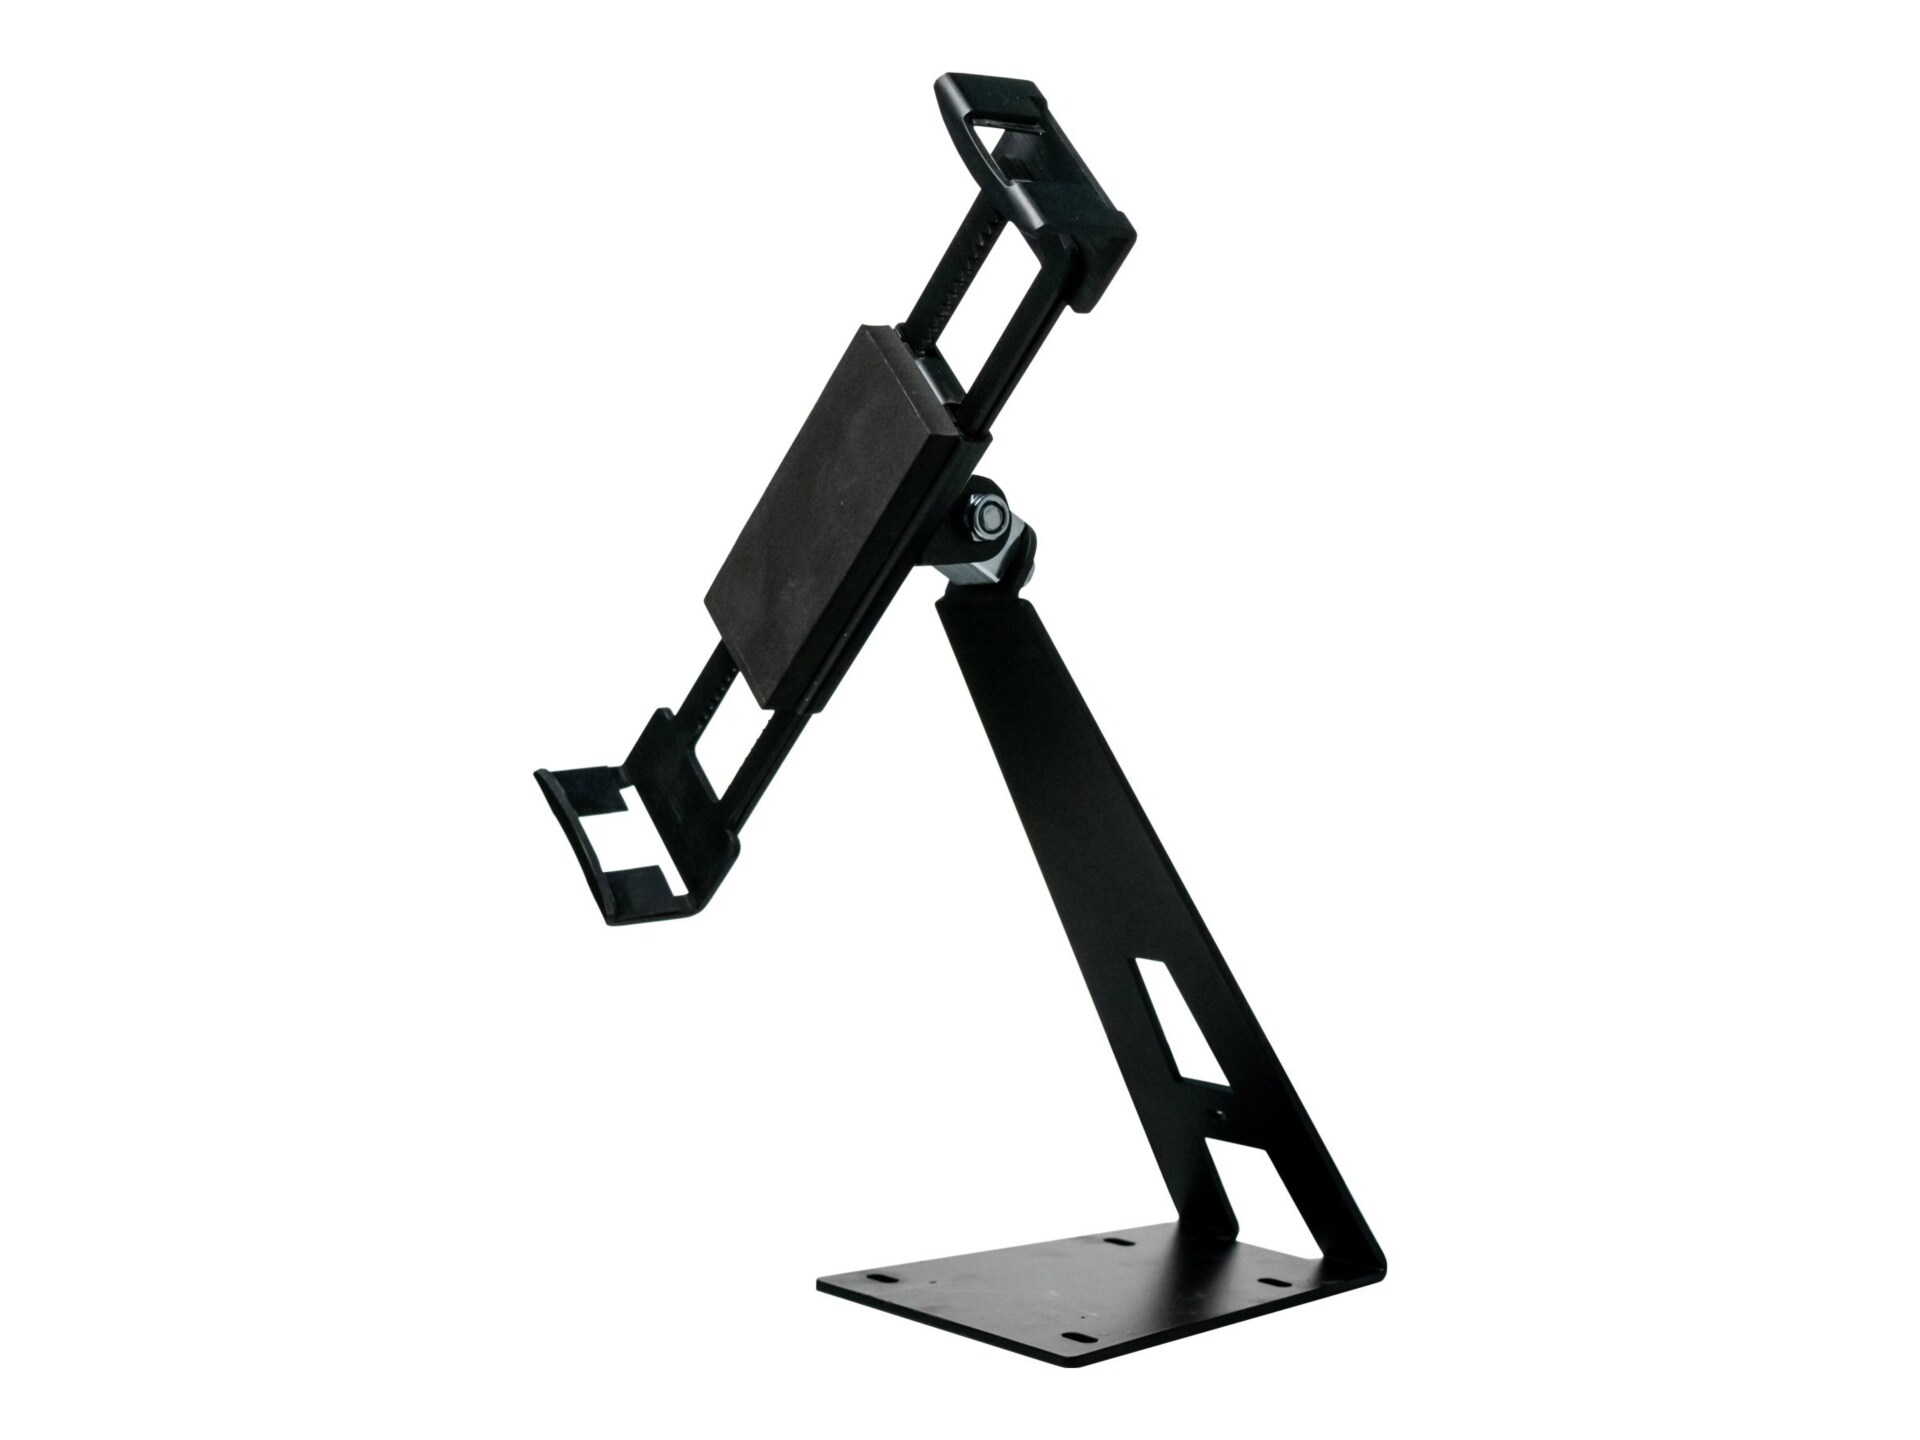 CTA Digital Angle-Adjustable Locking Desktop Stand for 7-14 Inch Tablets